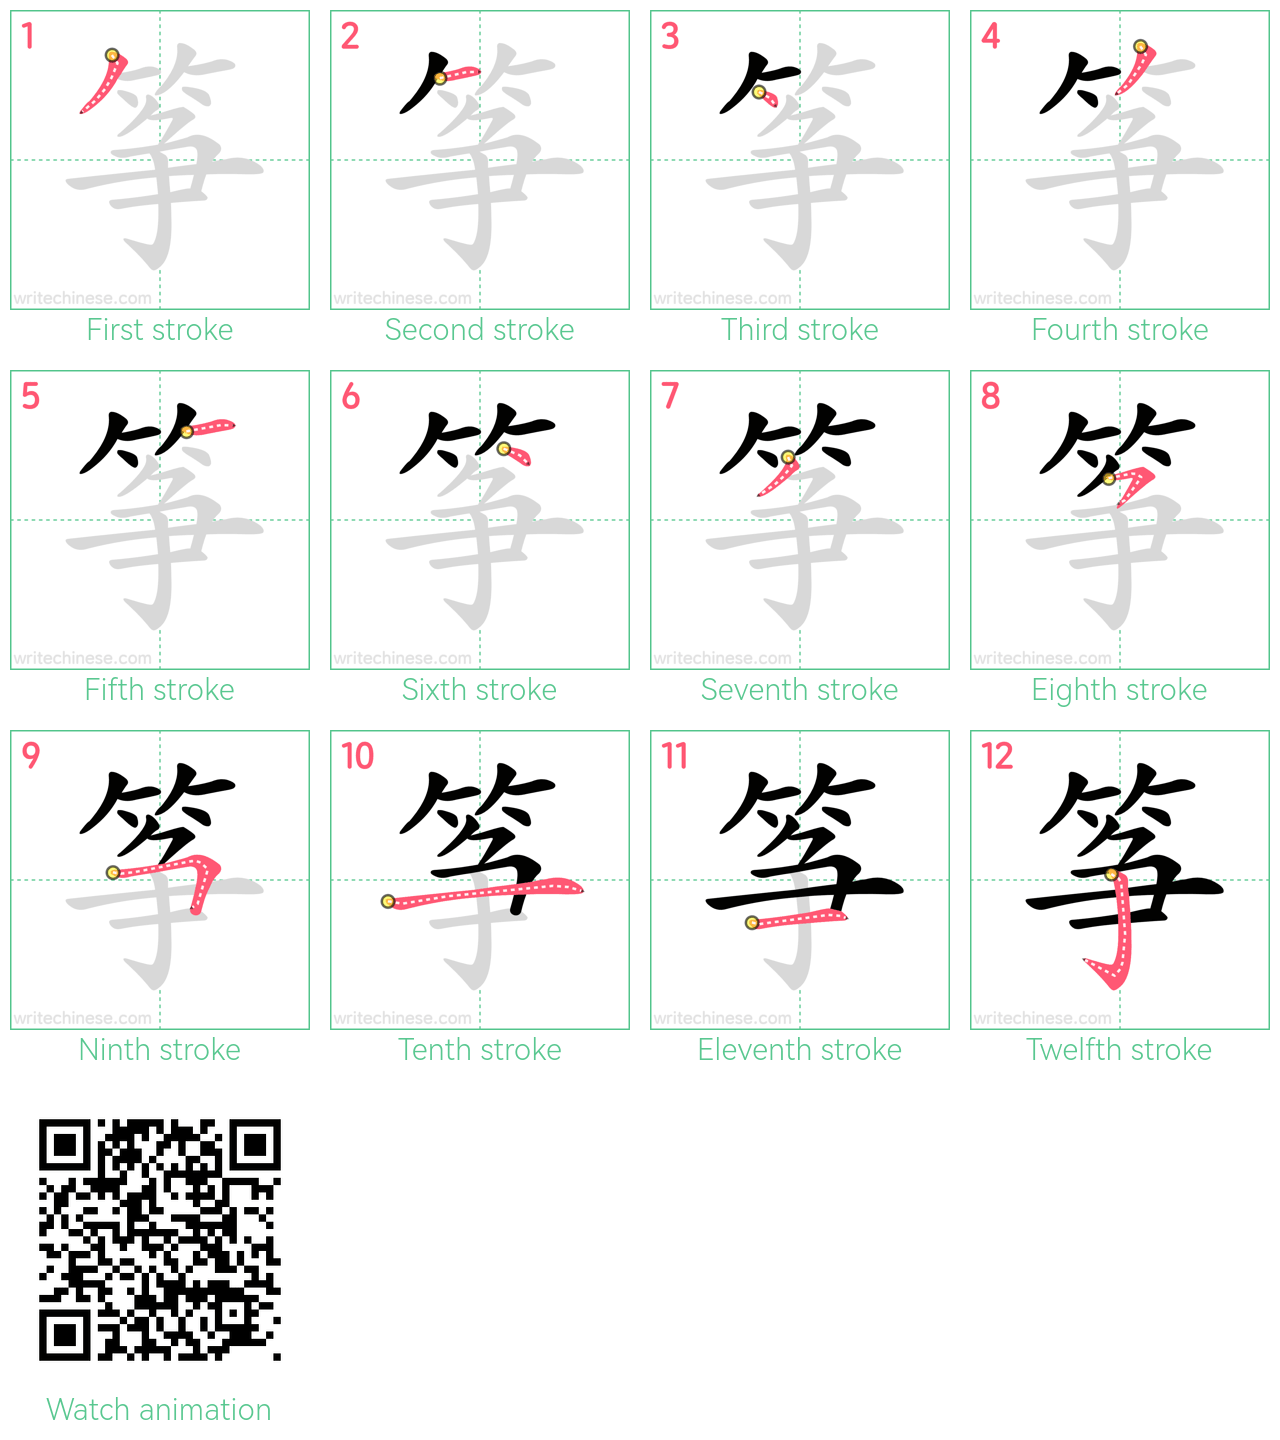 筝 step-by-step stroke order diagrams